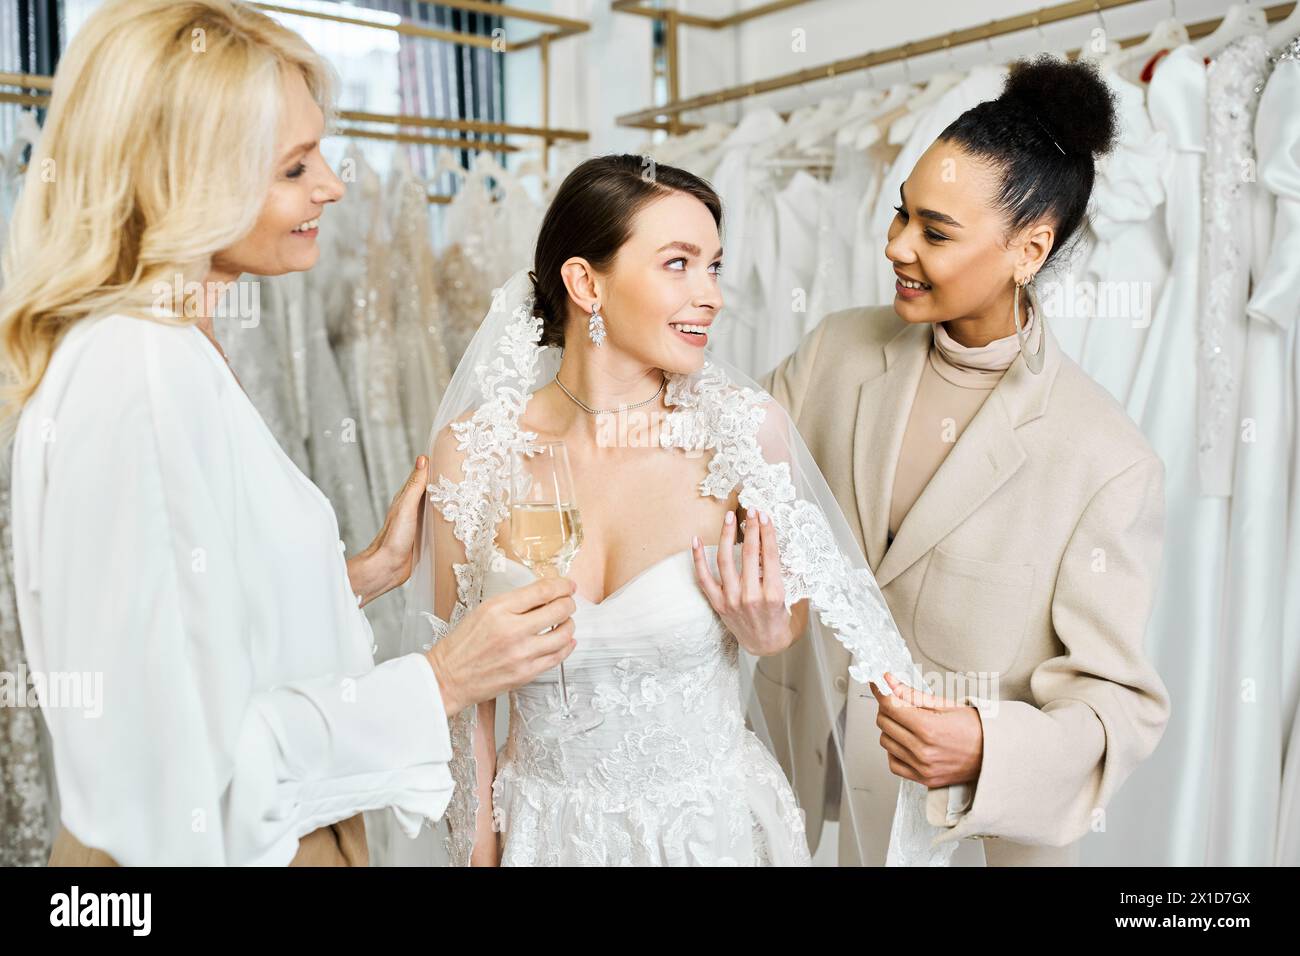 Eine junge Braut, ihre Mutter und die Brautjungfer stehen in einem Brautsalon neben einem Kleiderständer und prüfen ihre Optionen. Stockfoto